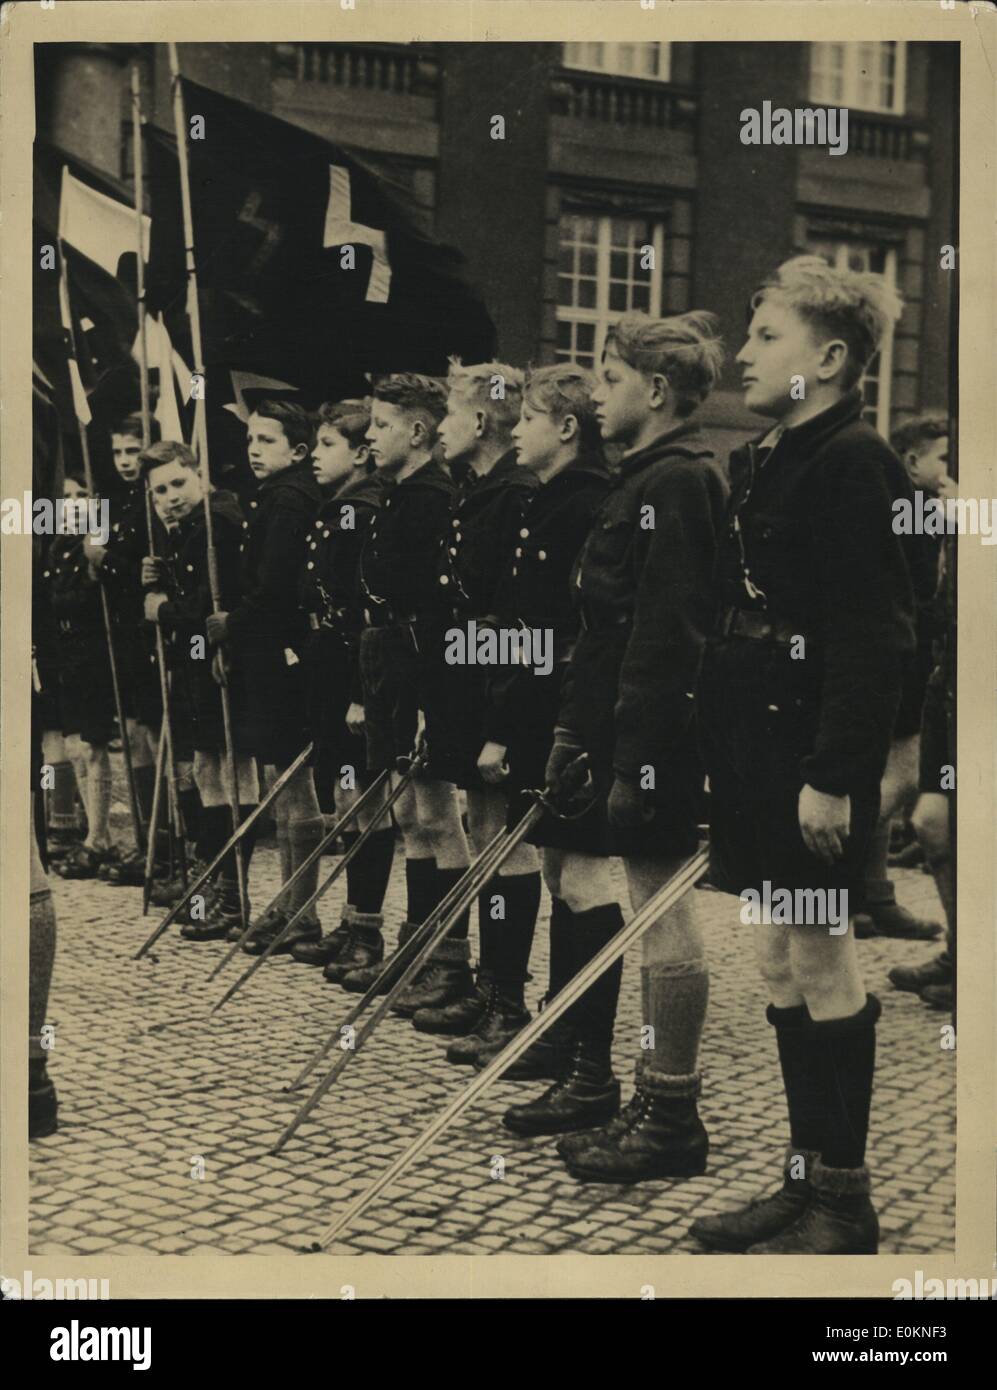 1 janvier, 1930 - Défilé de la jeunesse allemande à Berlin : un groupe de petits garçons, armés d'épées, qui a participé à un grand défilé de la jeunesse allemande qui s'est déroulé à Berlin dans le cadre d'un concours de chant. (Date précise inconnue). Banque D'Images